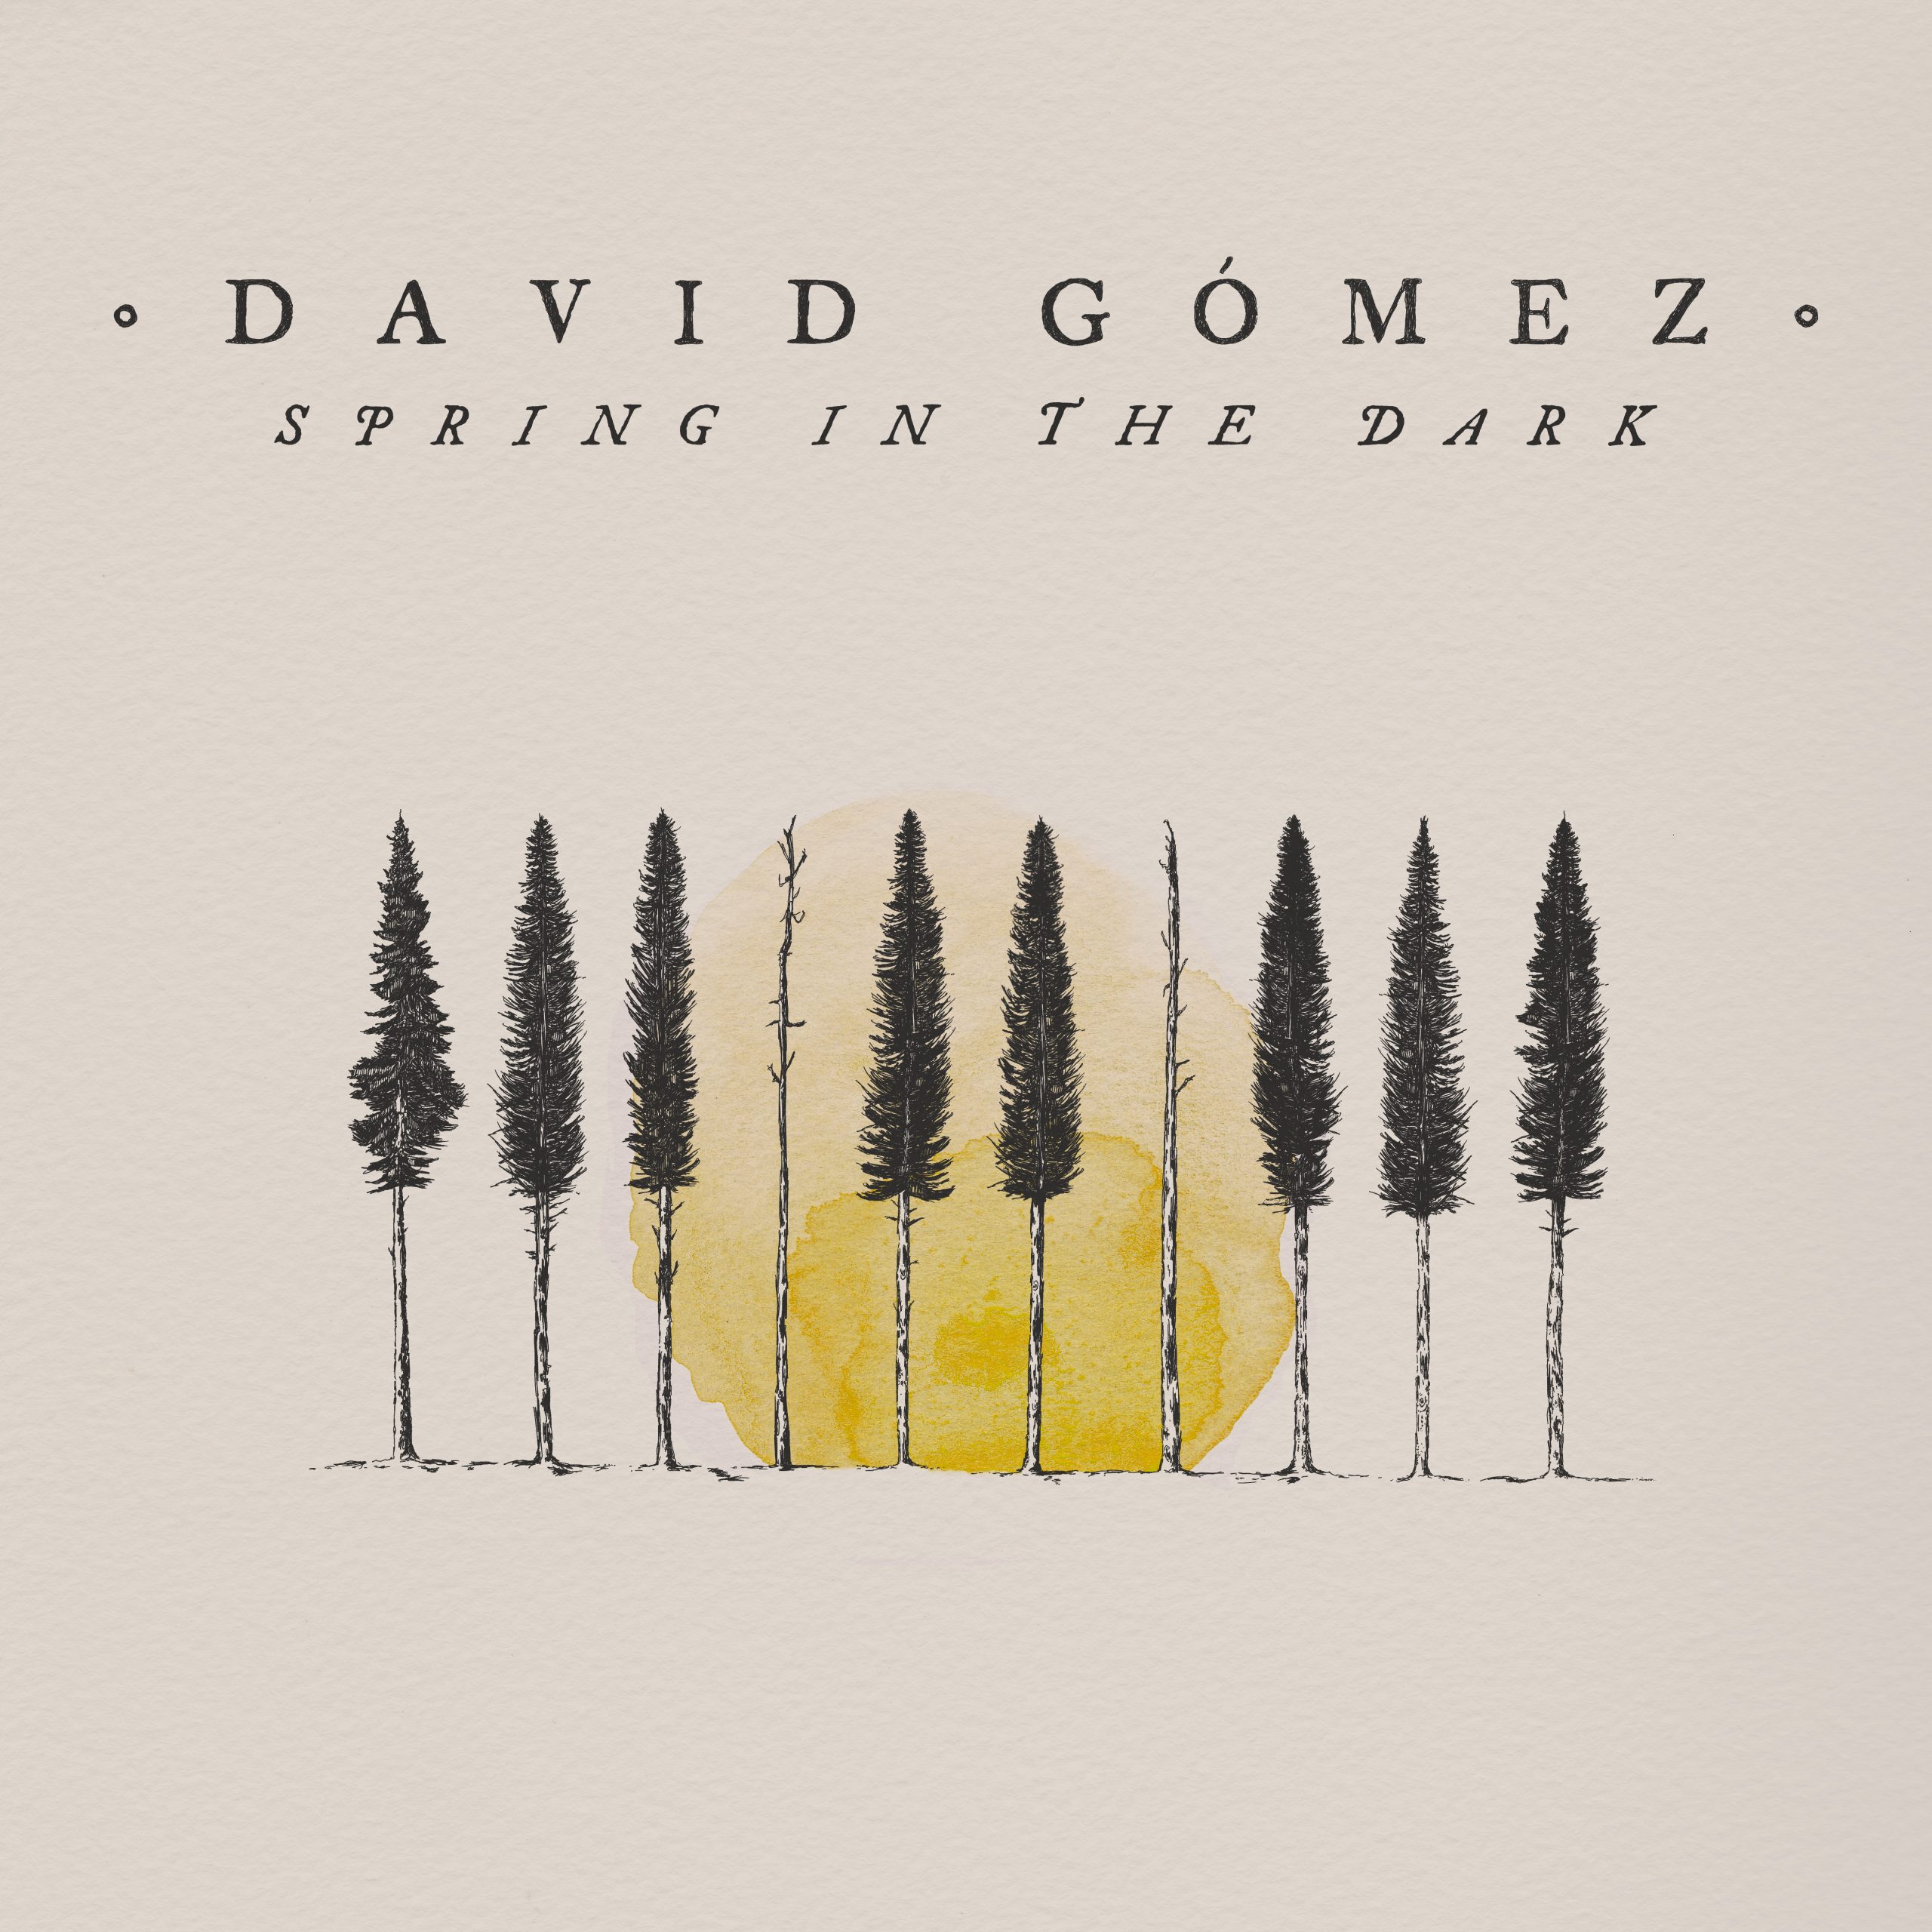 David Gómez – “Spring in the dark”